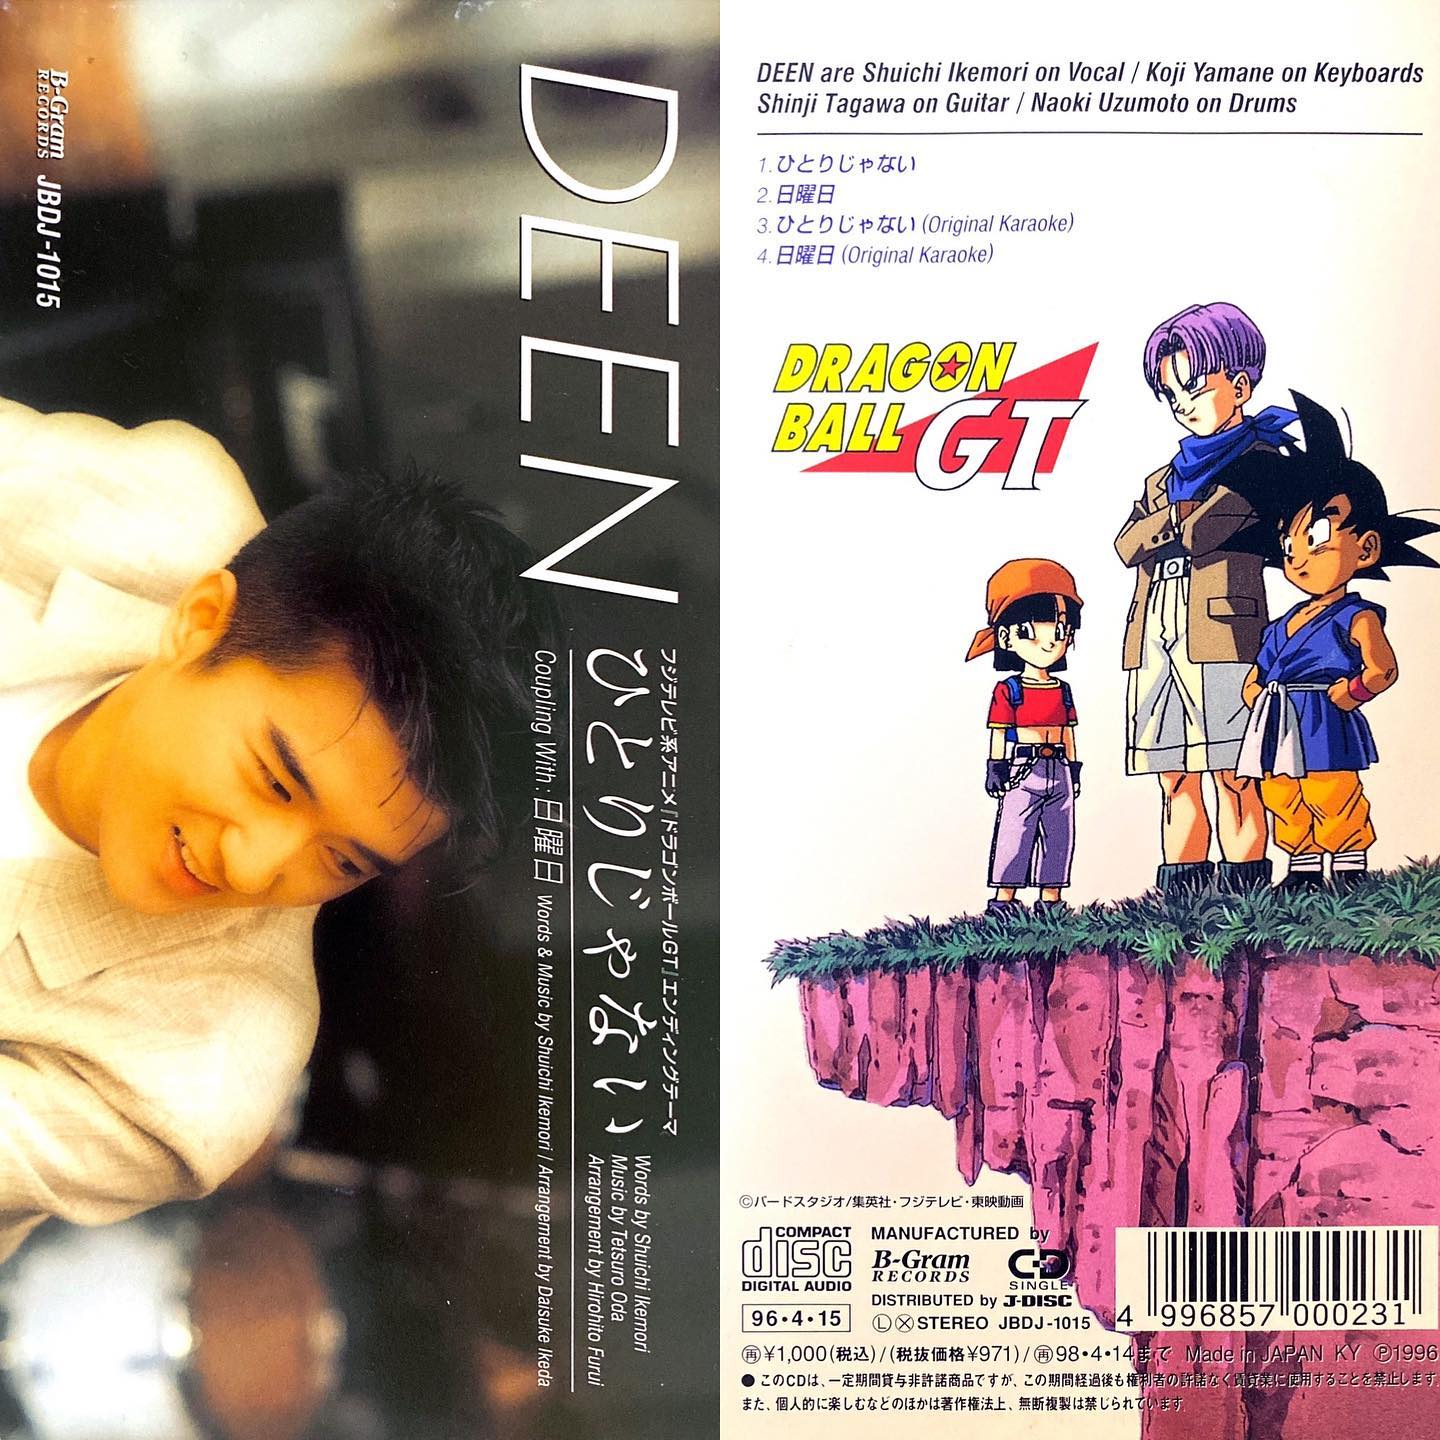 ひとりじゃない/DEENドラゴンボールGT ED1(1996年~1997年)#センチメンタルグルーヴ#sentimental_groove #アニメ #アニソン #8cmCD #短冊CD#ドラゴンボールGT #ドラゴンボール #DEEN #anime #animesong #GRAGONBALL